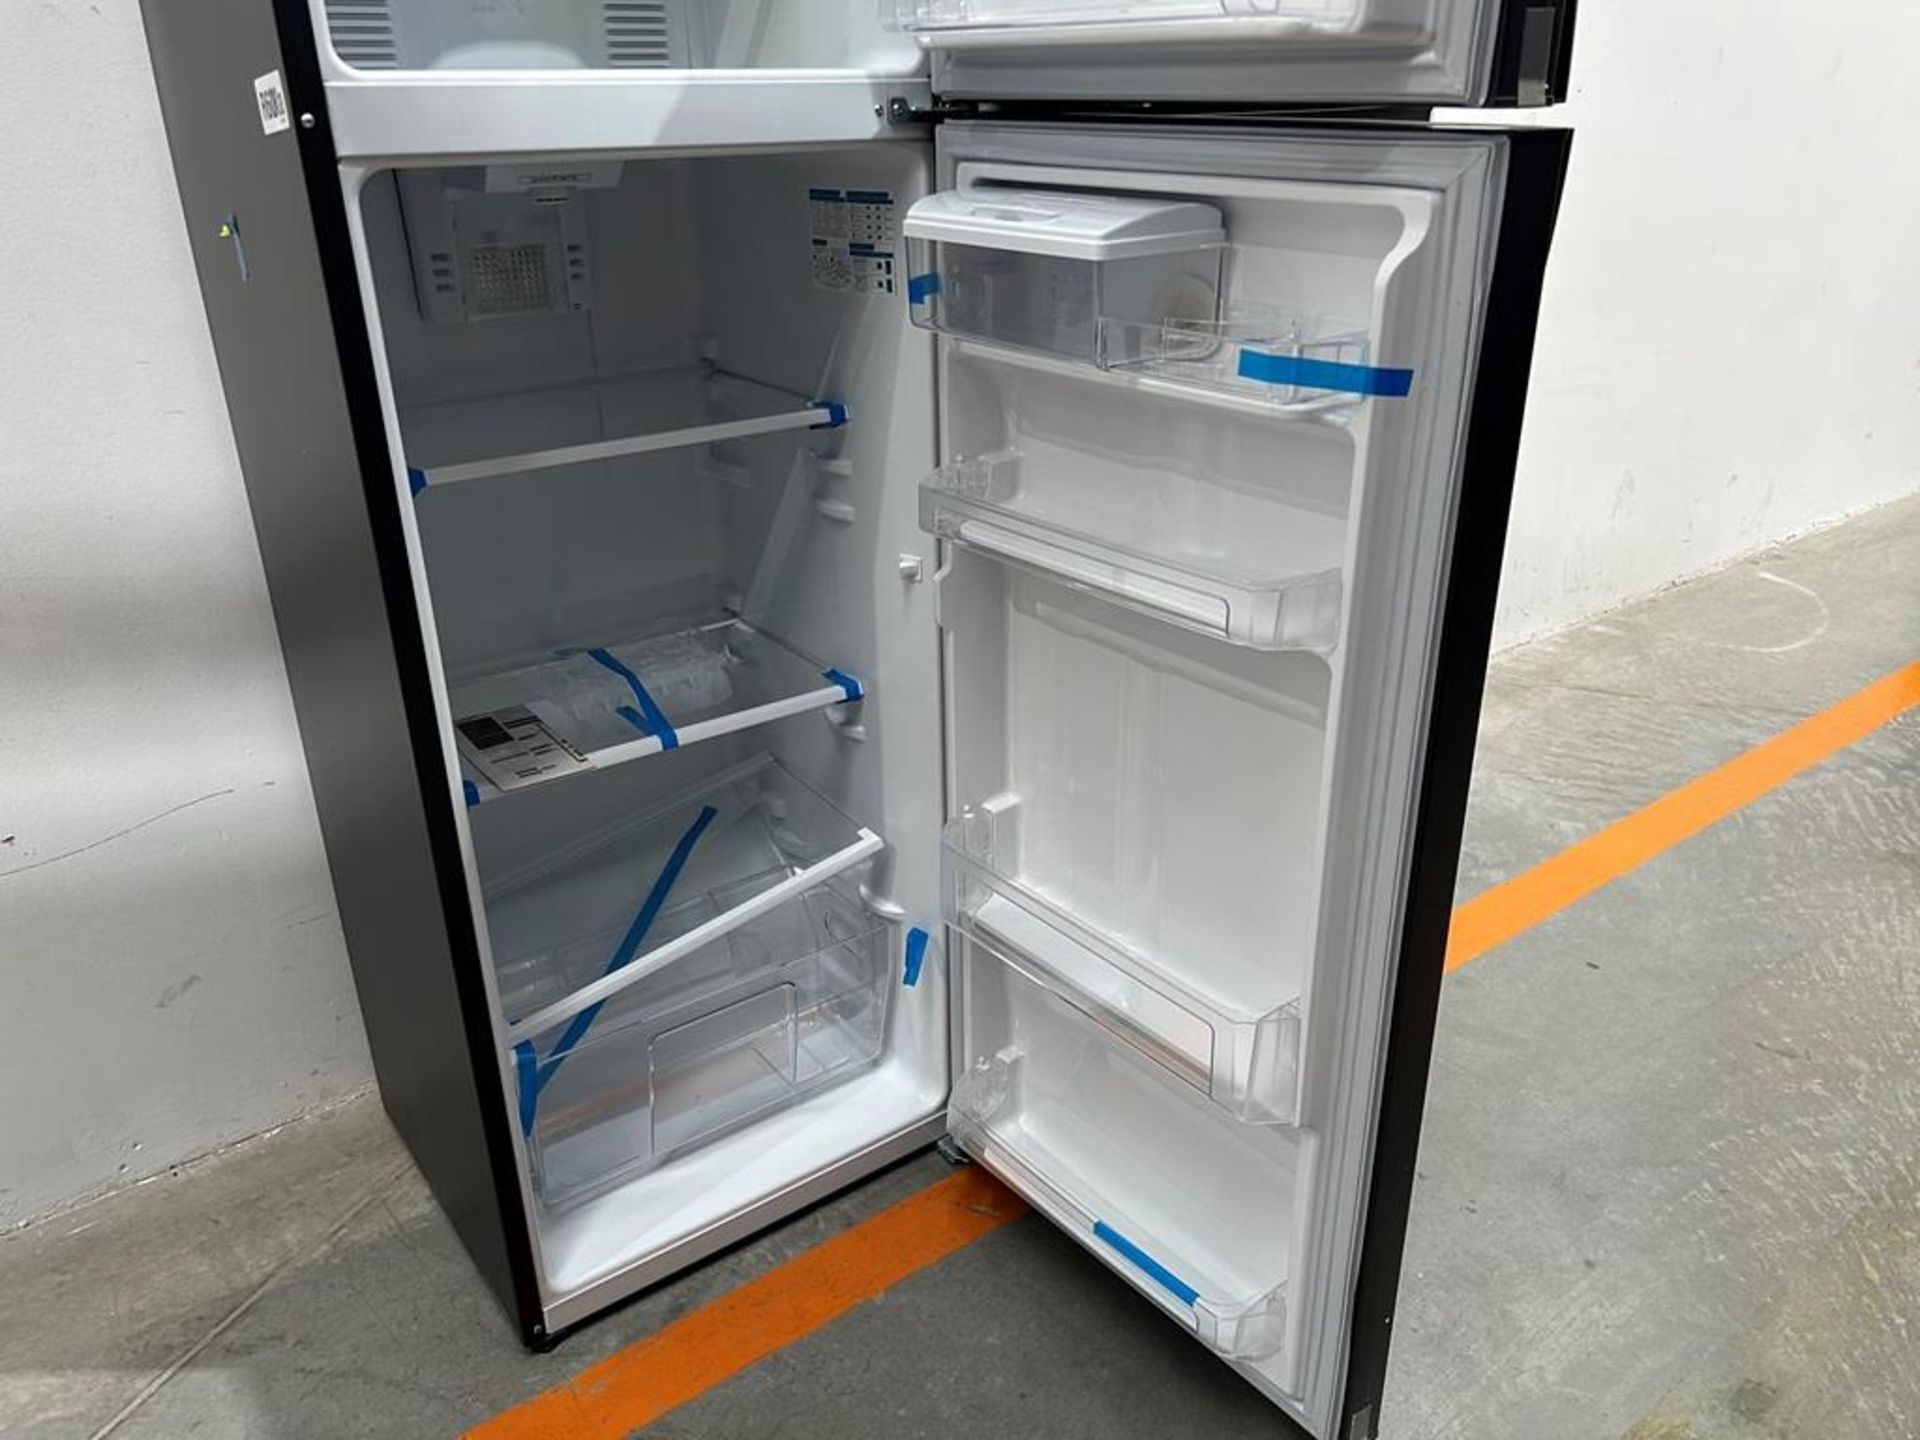 Lote de 2 refrigeradores contiene: 1 refrigerador con dispensador de agua Marca MABE, Modelo RMA300 - Image 5 of 10